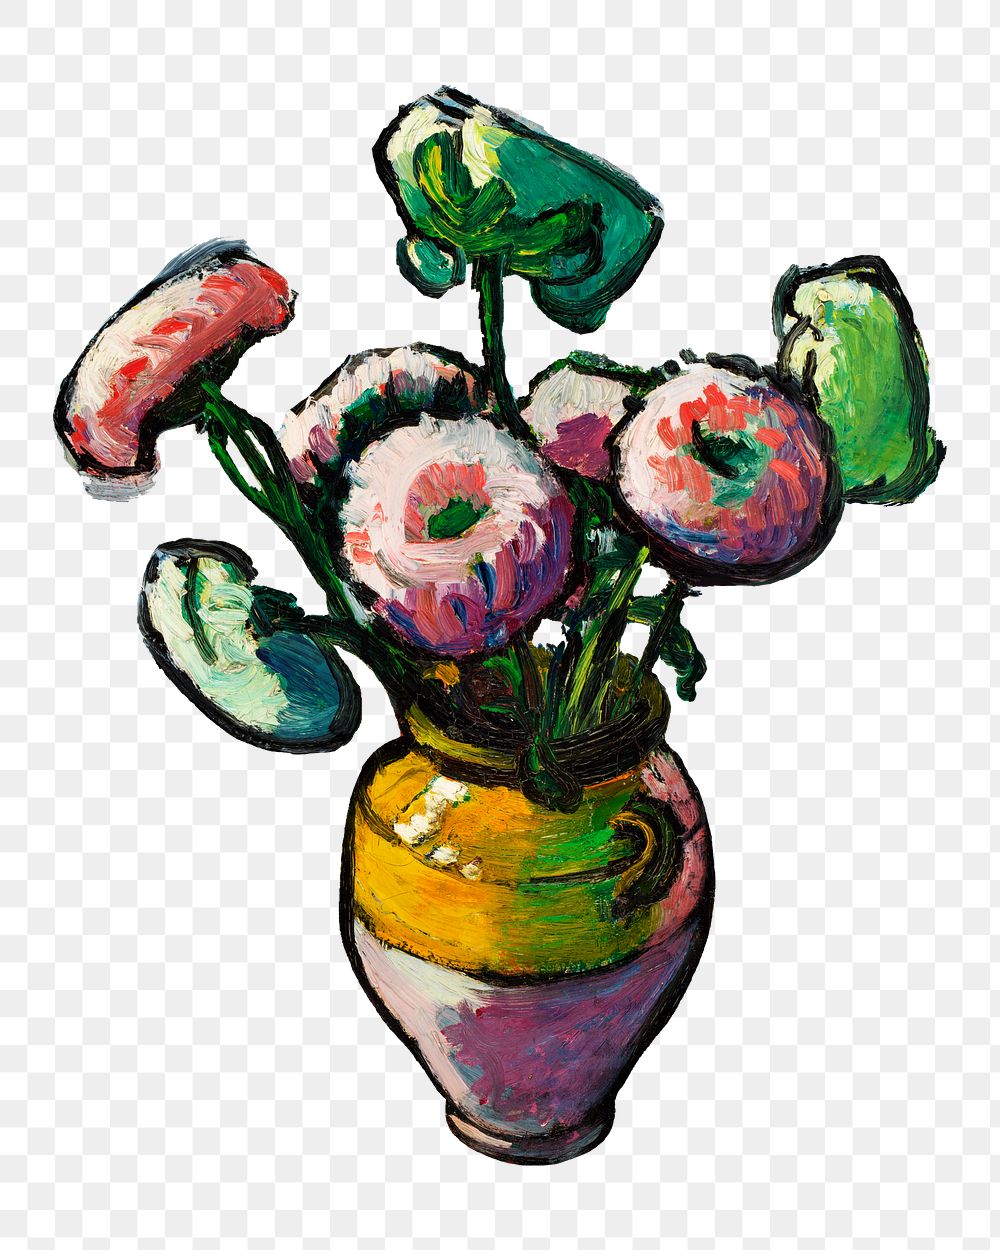 Zinnia flower png Henry Lyman Sayen's famous artwork sticker, transparent backgrounn, remixed by rawpixel